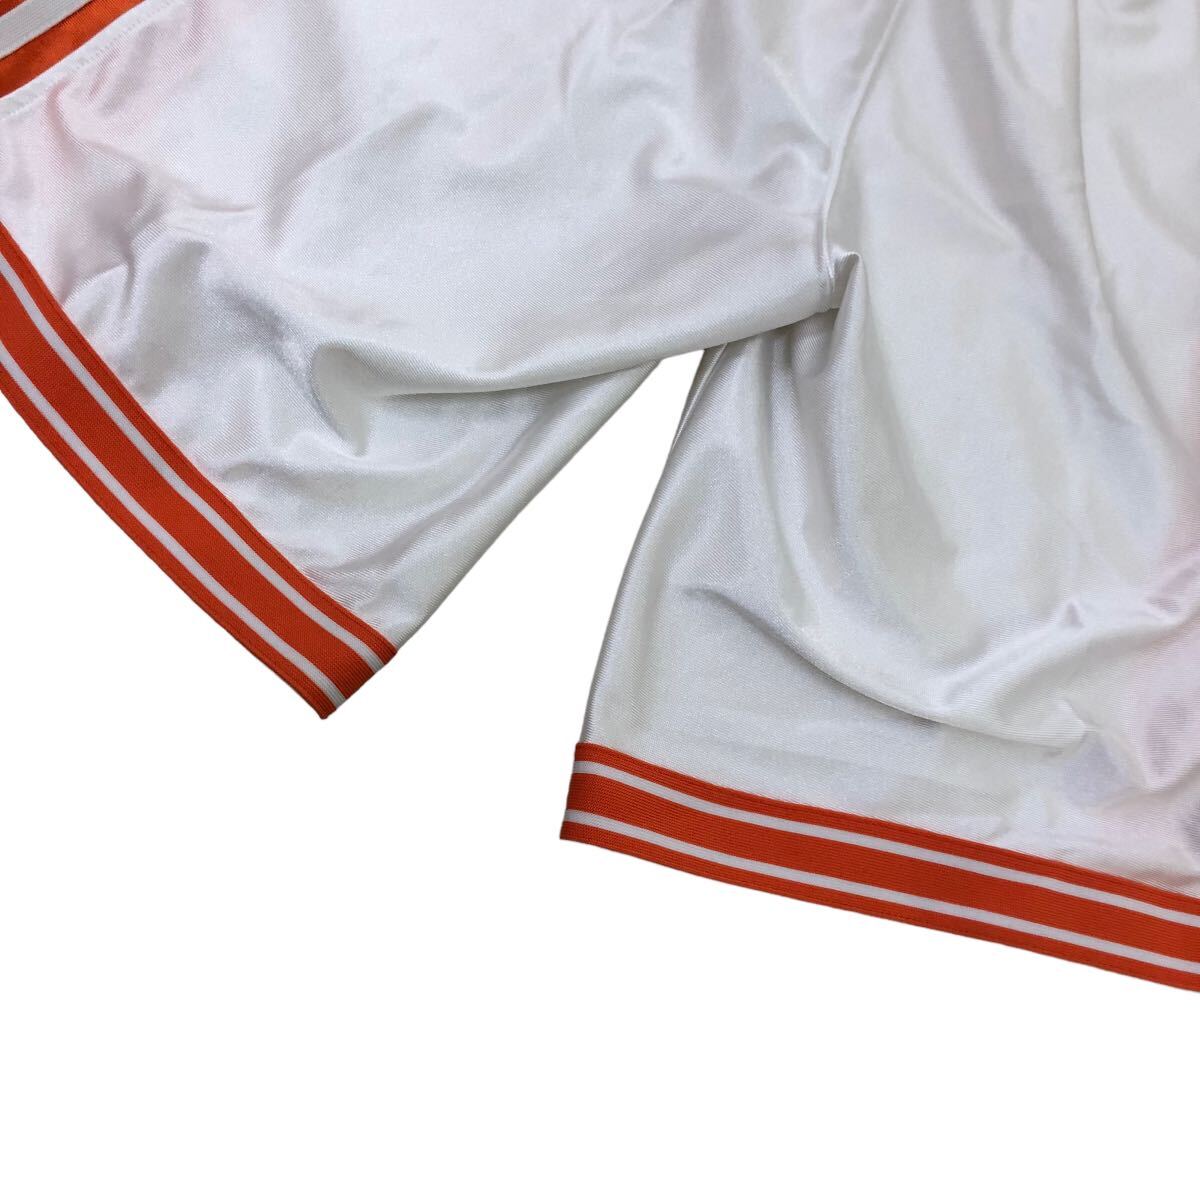 S199 日本製 NIKE ナイキ バスケパンツ ハーフパンツ ボトムス パンツ DRI-FIT スポーツウェア バスケットボール XS オレンジ ホワイト 白 _画像8